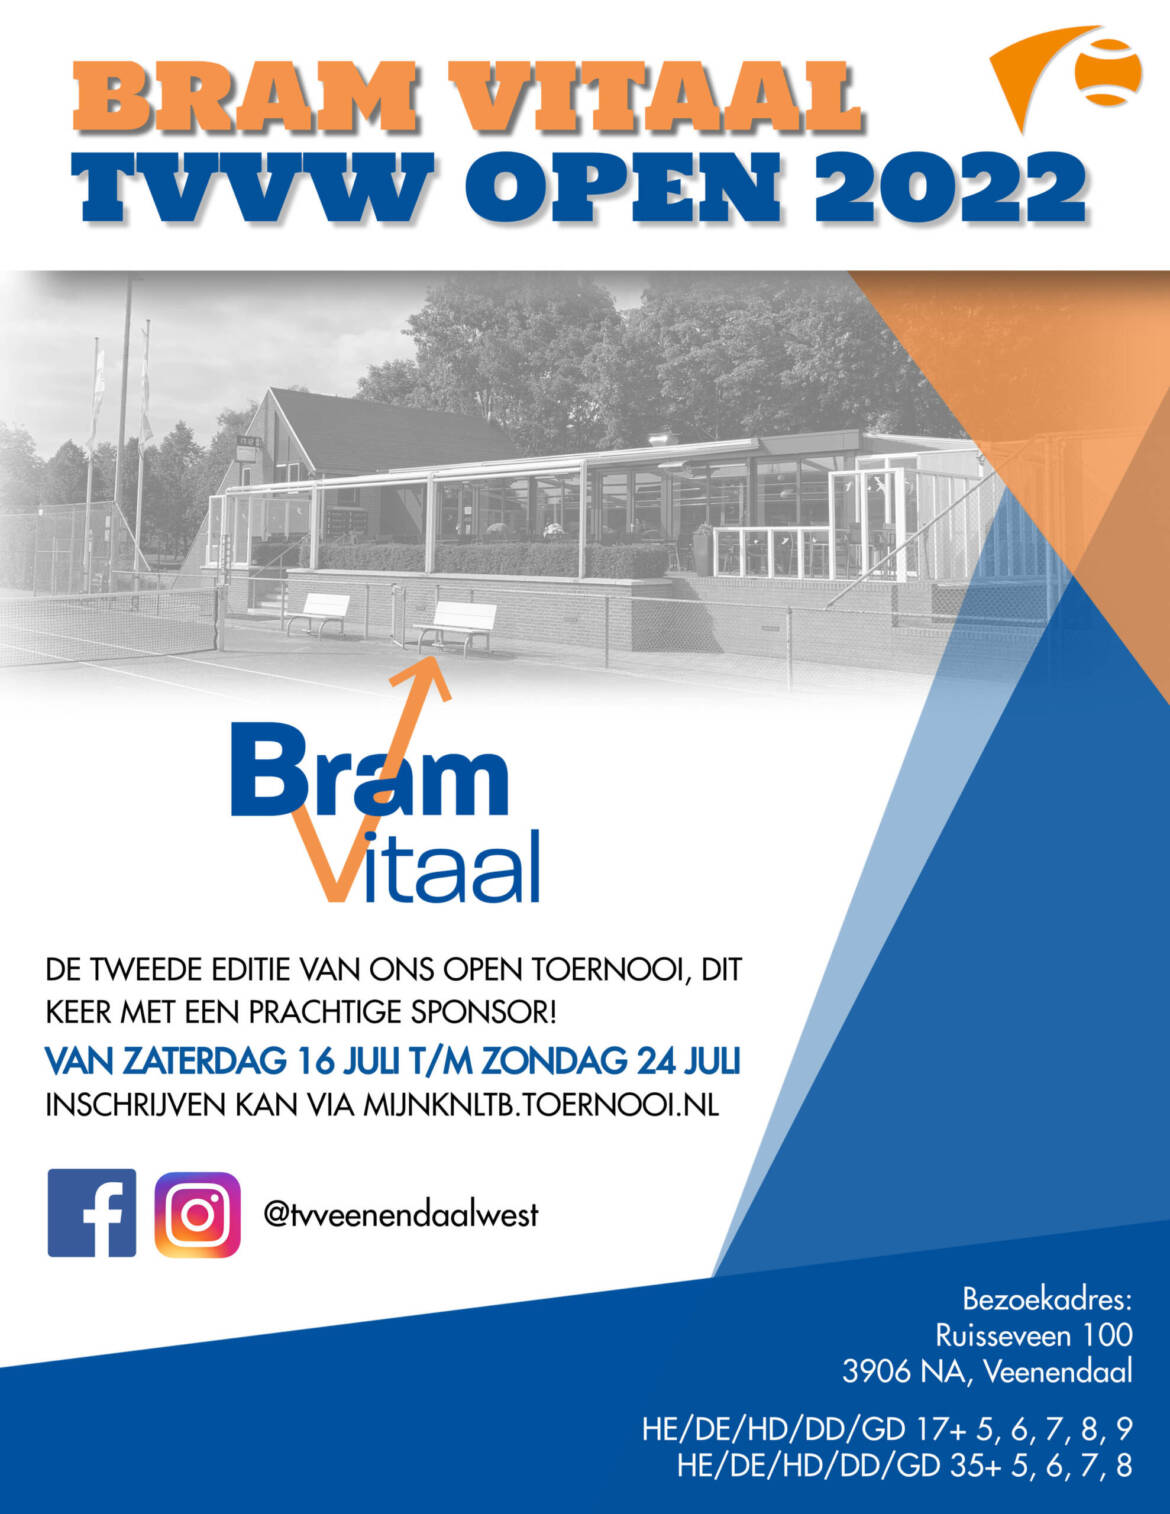 Bram Vitaal TVVW Open 2022